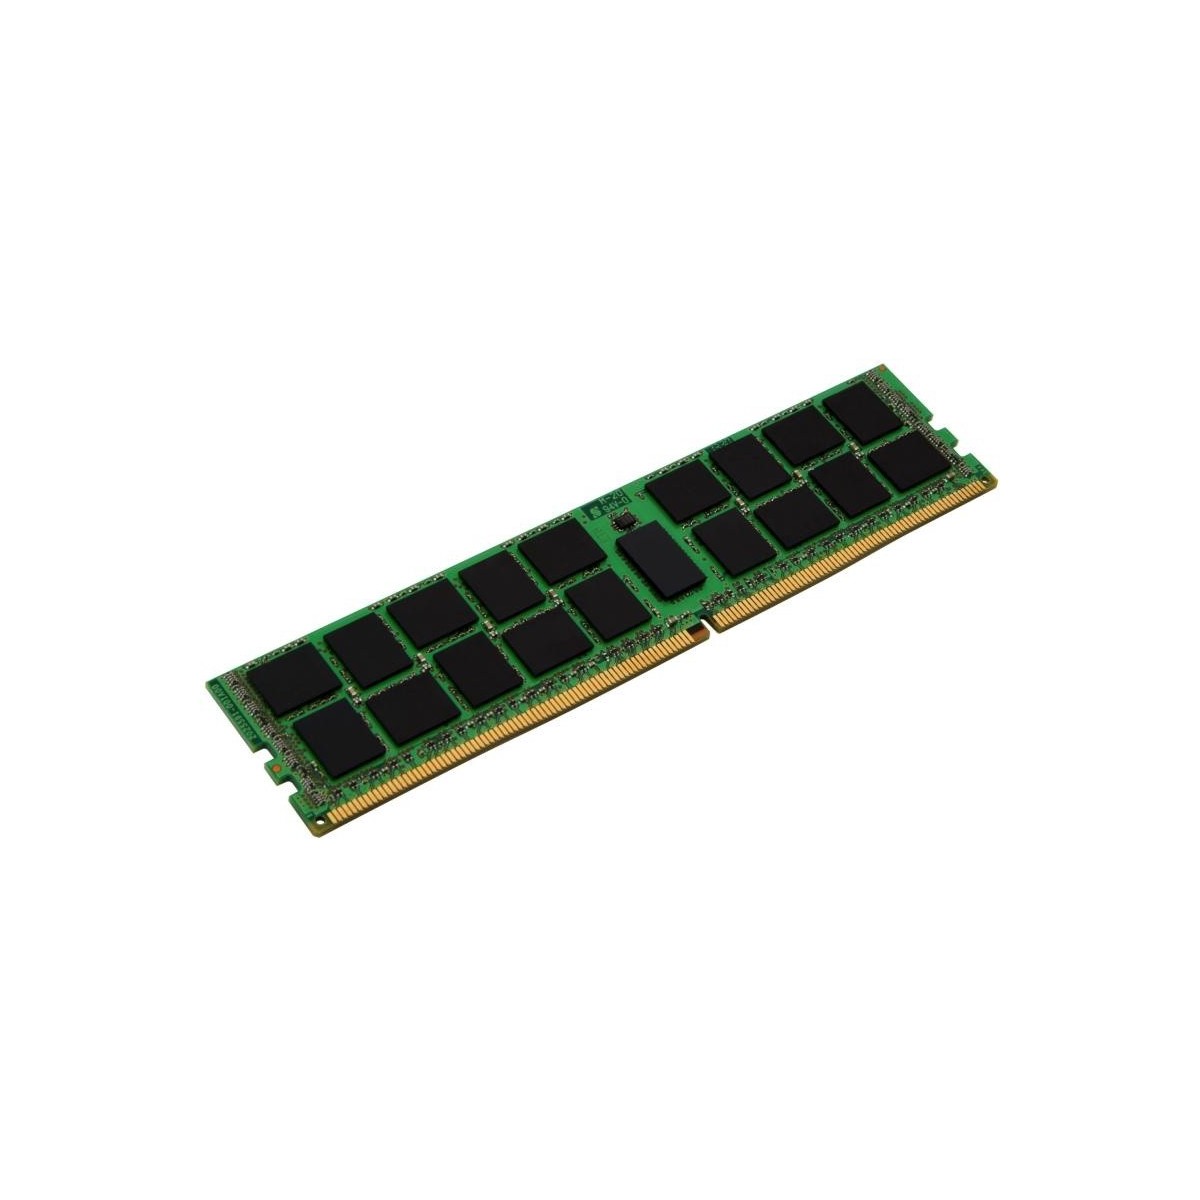 Kingston 16GB DDR3 1333MHz ECC - 16 GB - 1 x 16 GB - DDR3L - 1333 MHz - Black - Green